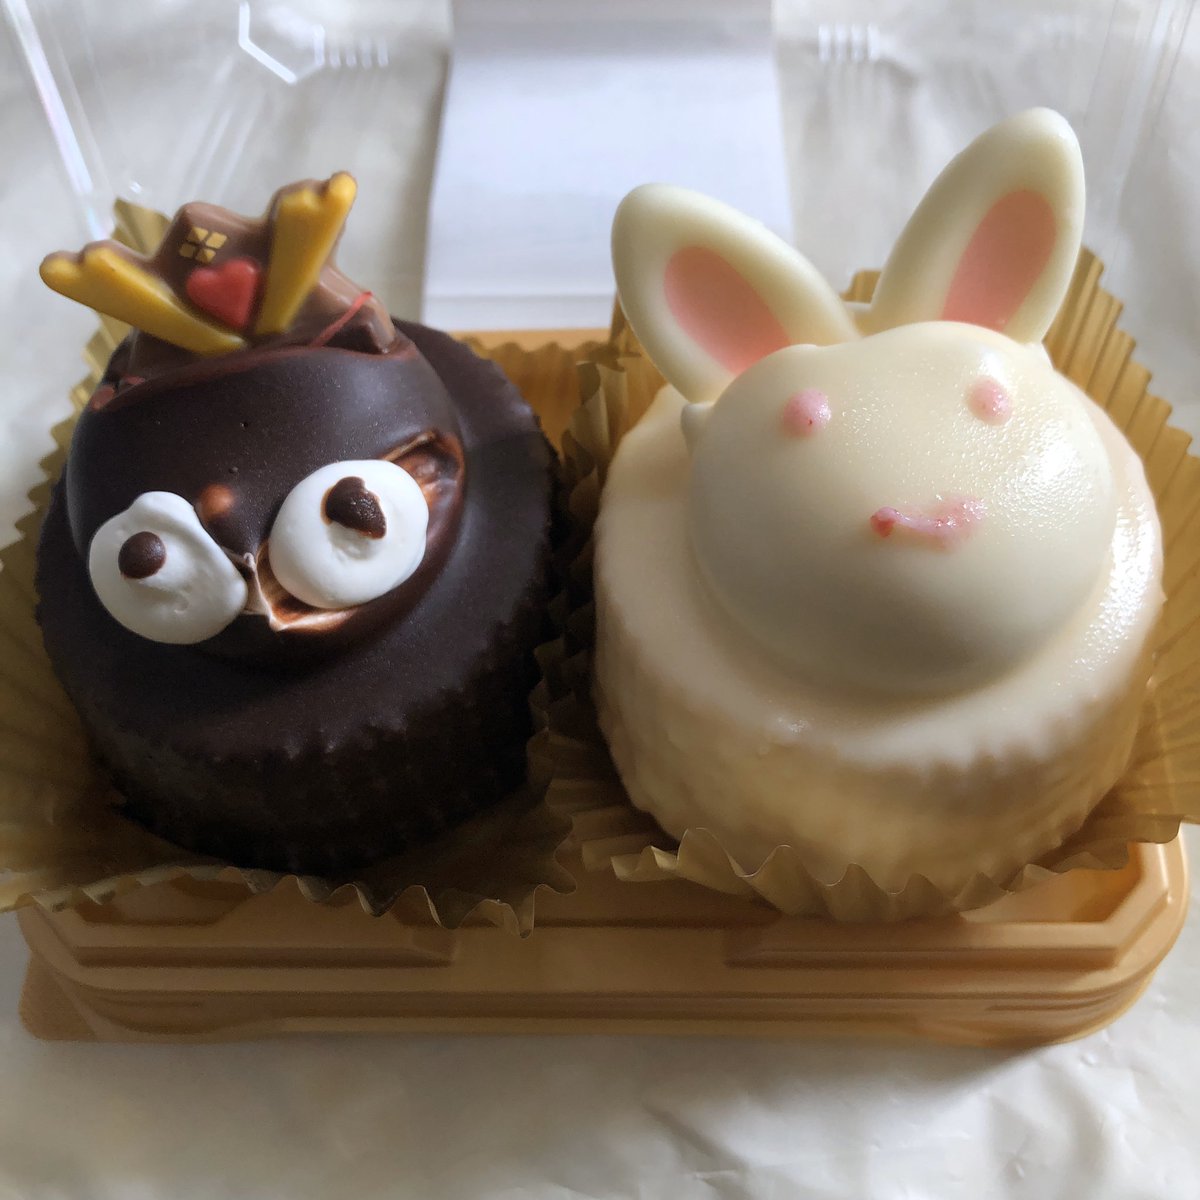 十和田においでよ 工藤パン の たぬきケーキ うさぎケーキ ひな祭りバージョンは購入できなかったので嬉しいです 十和田市 カケモ 切田通り店に有りました